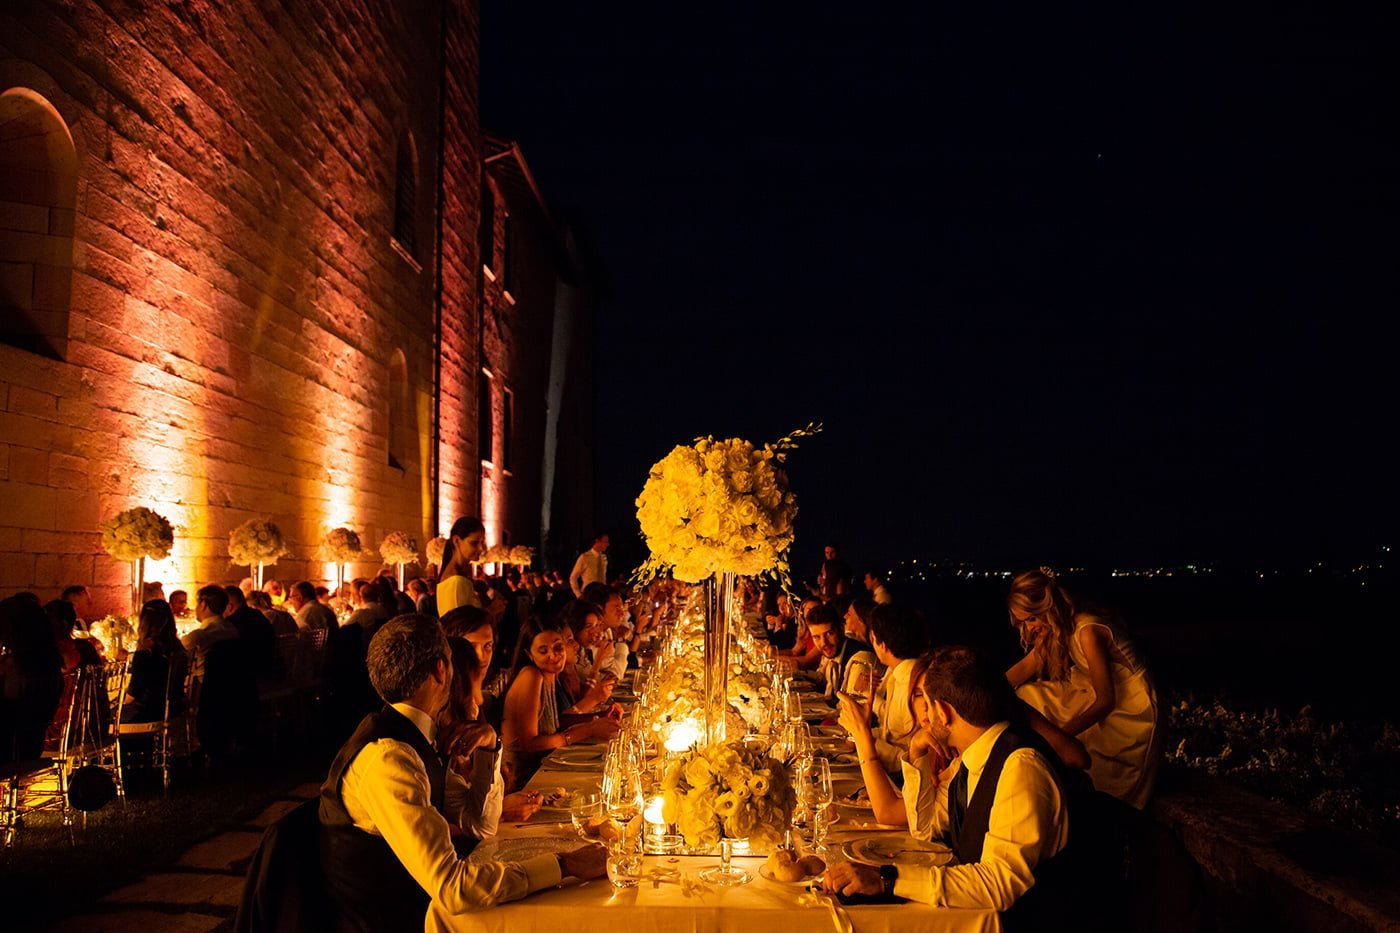 castello italiano - SugarEvents Luxury Wedding and Event Planner